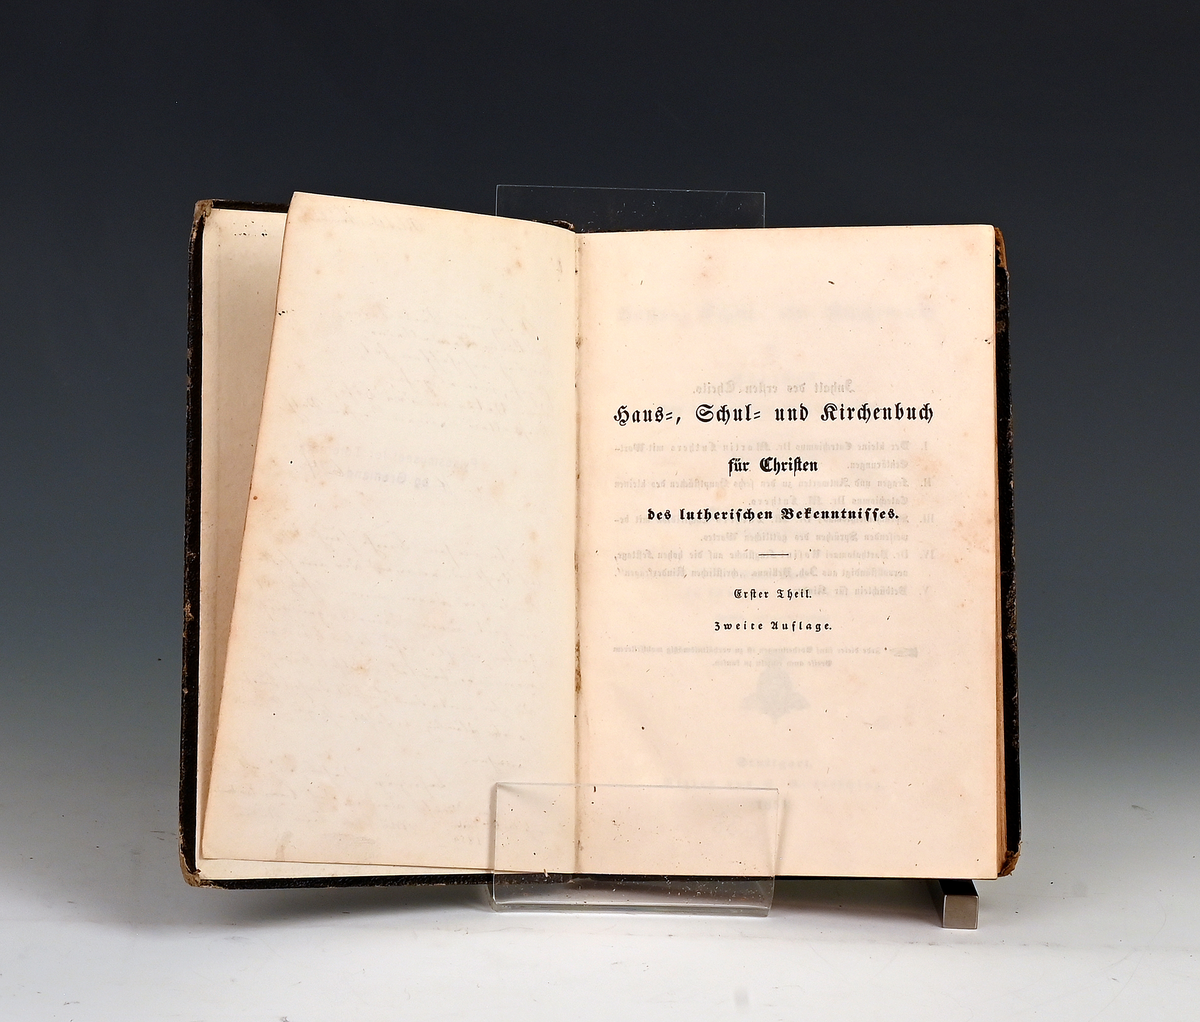 Löhe, Wilh. Haus- Schul und Kirschenbuch für christen des luterischen Bekamt... I.
Stuttg. 1851